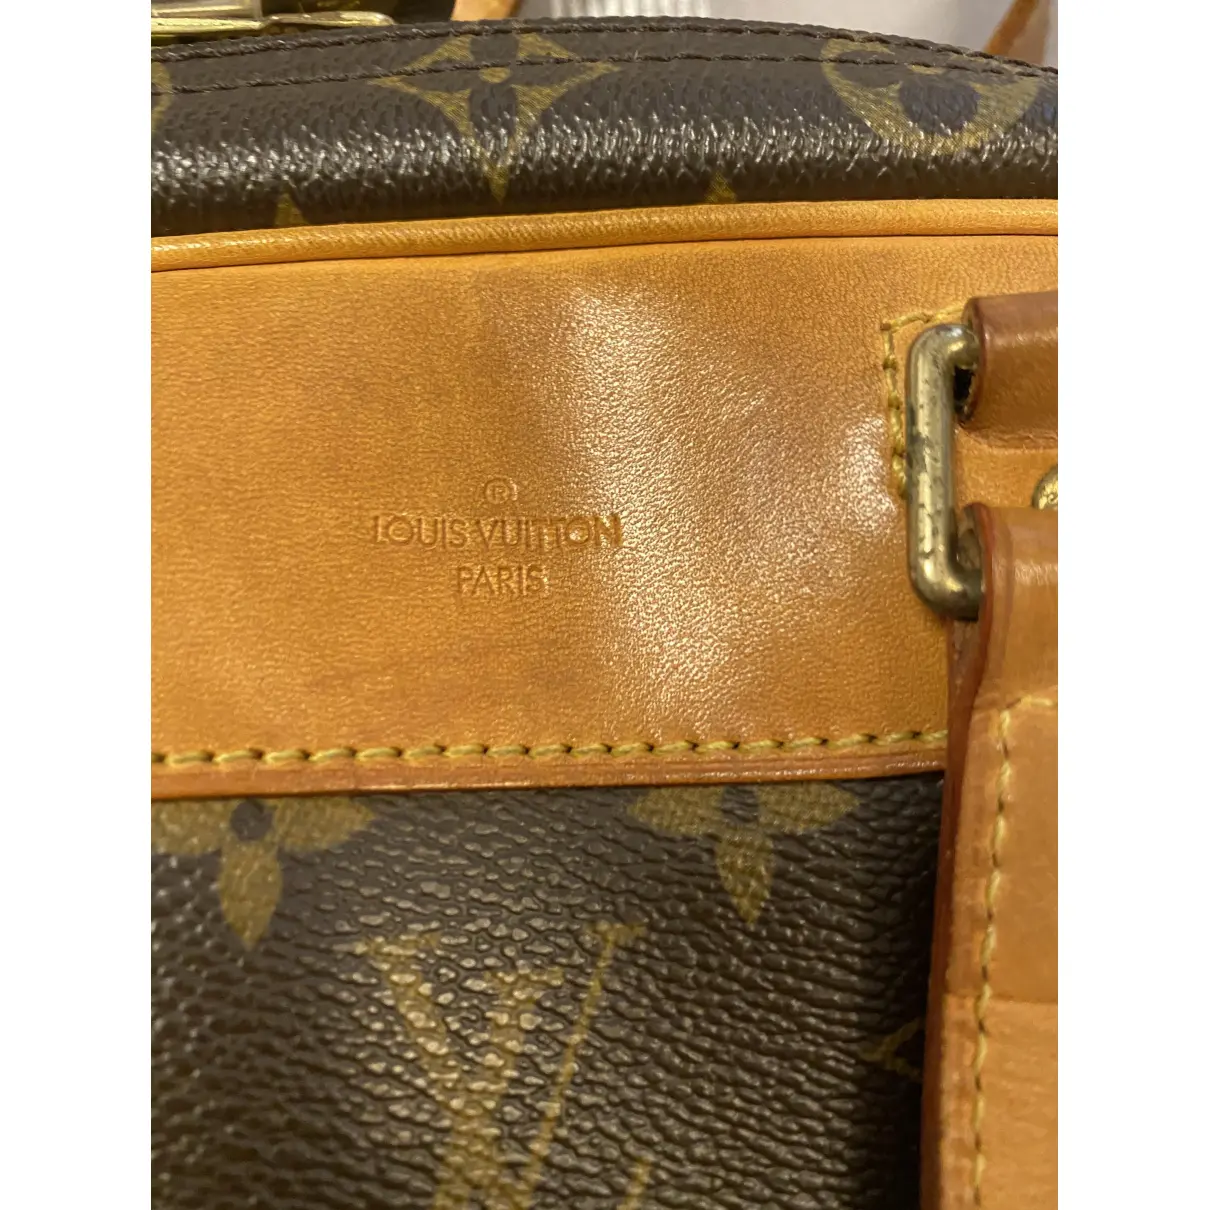 Buy Louis Vuitton Excursion cloth travel bag online - Vintage